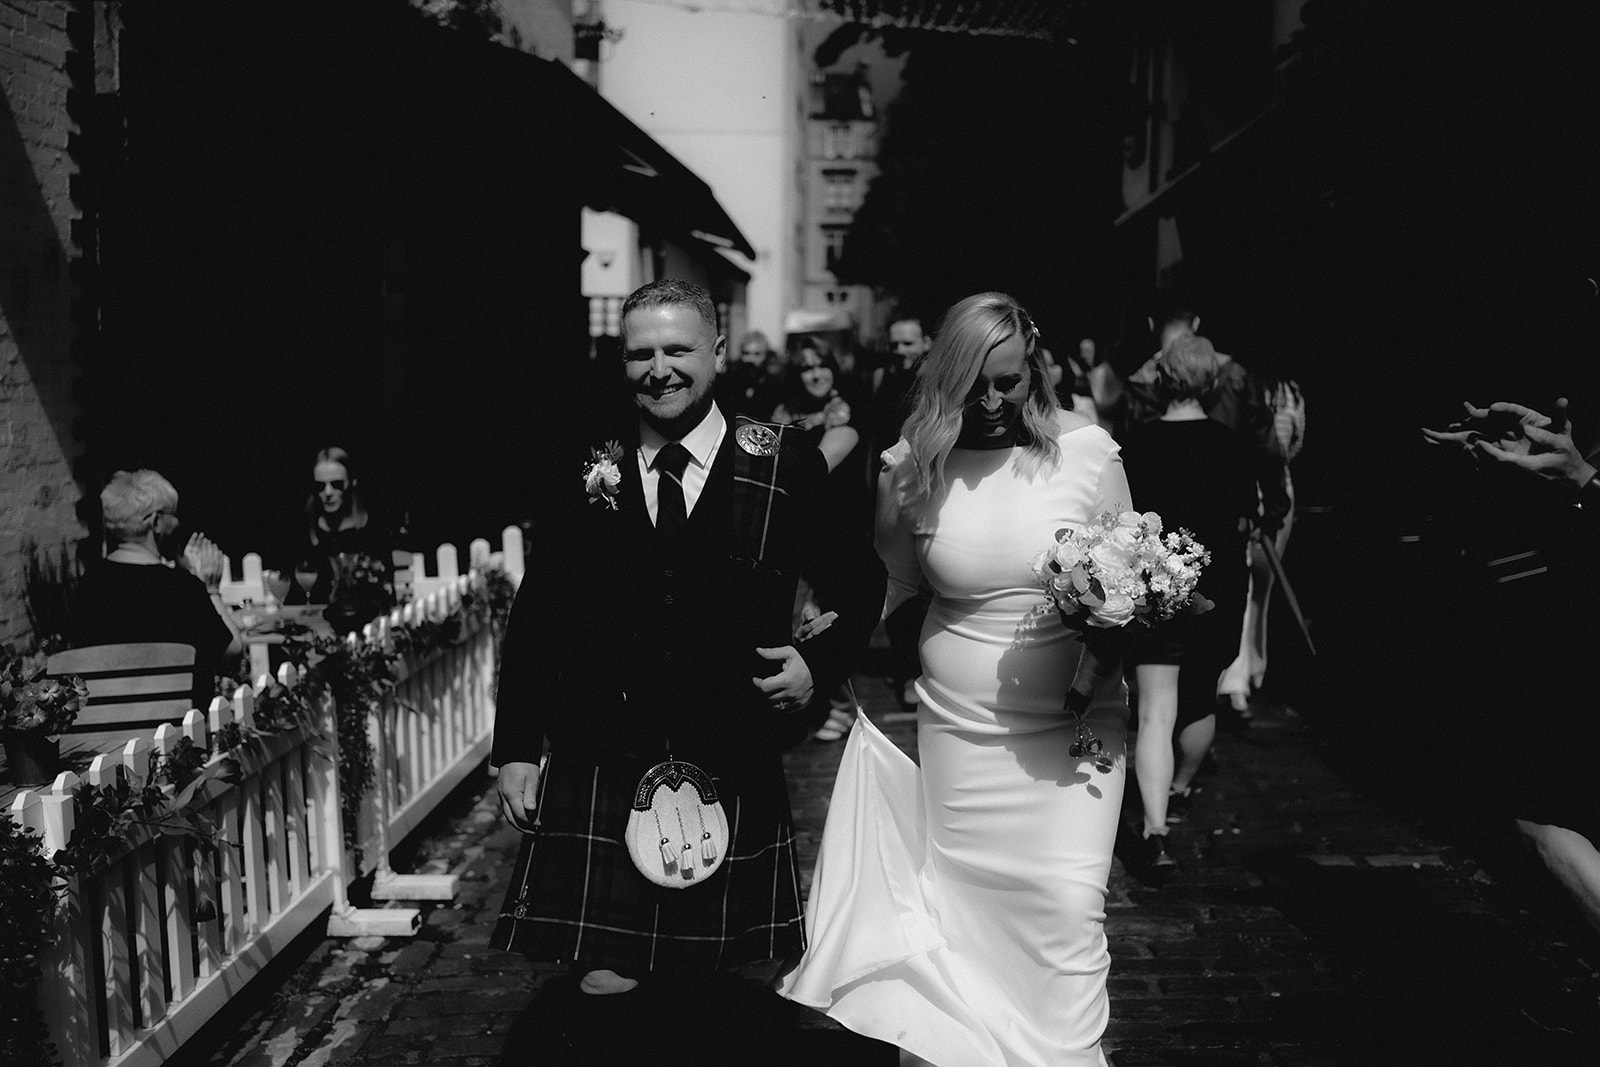 Wedding couple walking through Ashton Lane, Glasgow.